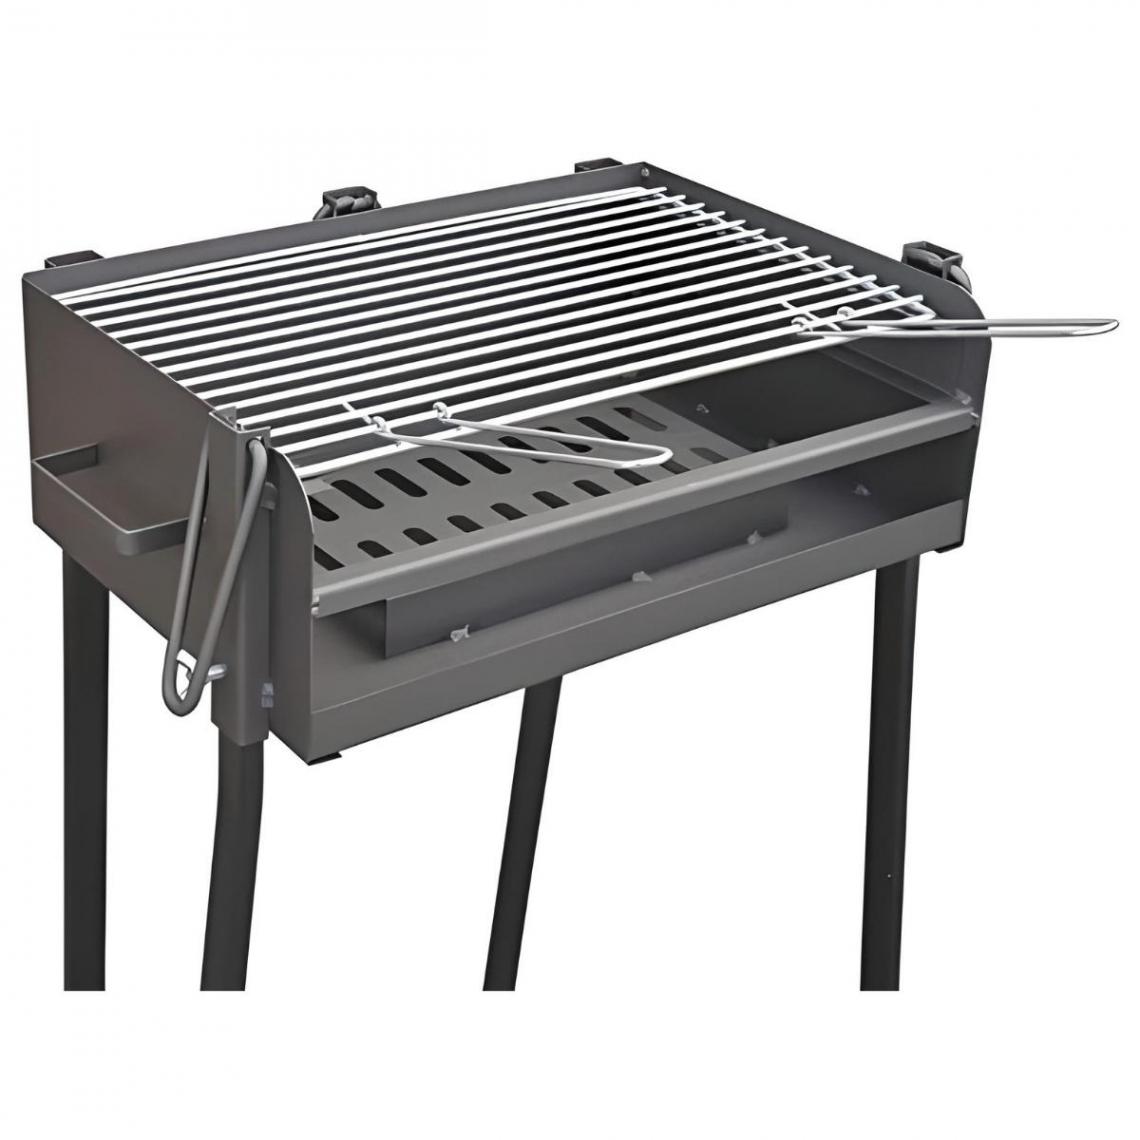 Visiodirect - Barbecue rectangulaire avec support en acier inoxydable coloris Noir - 50 x 34 x 84,5 cm - Barbecues charbon de bois